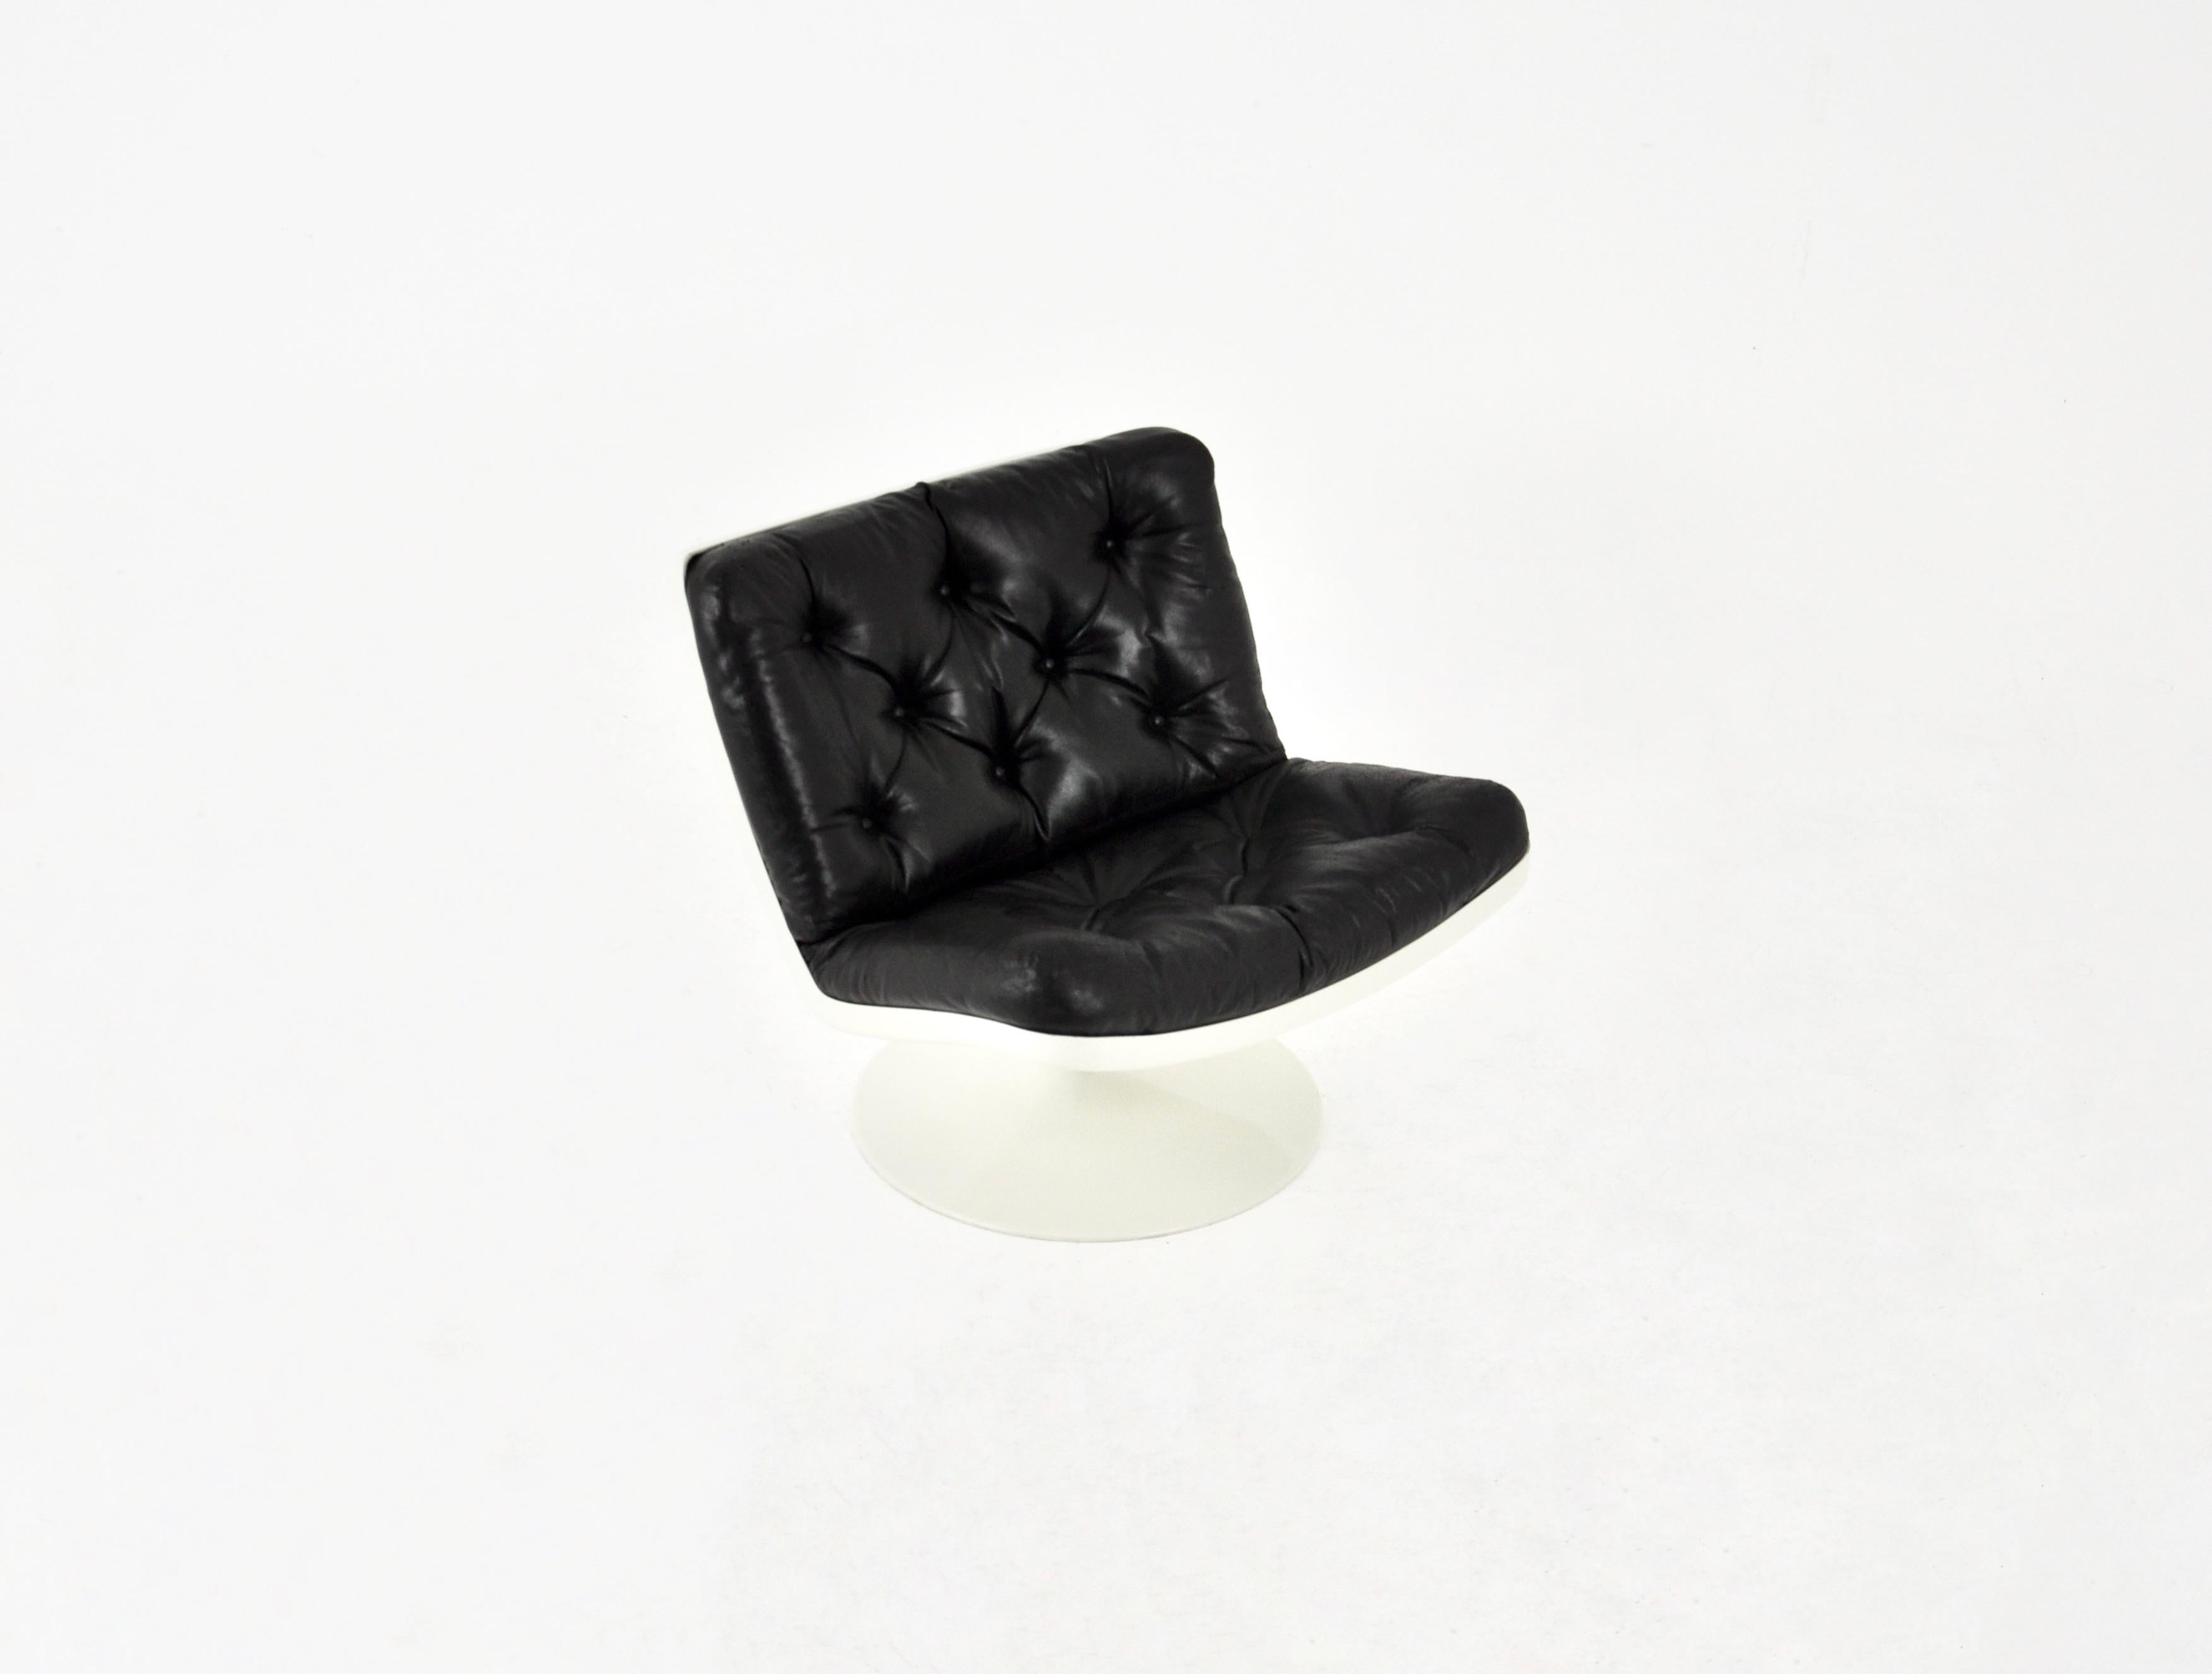 Drehsessel aus schwarzem Leder und Kunststoffschale. Sitzhöhe 43 cm. Zeit- und altersbedingte Abnutzung.